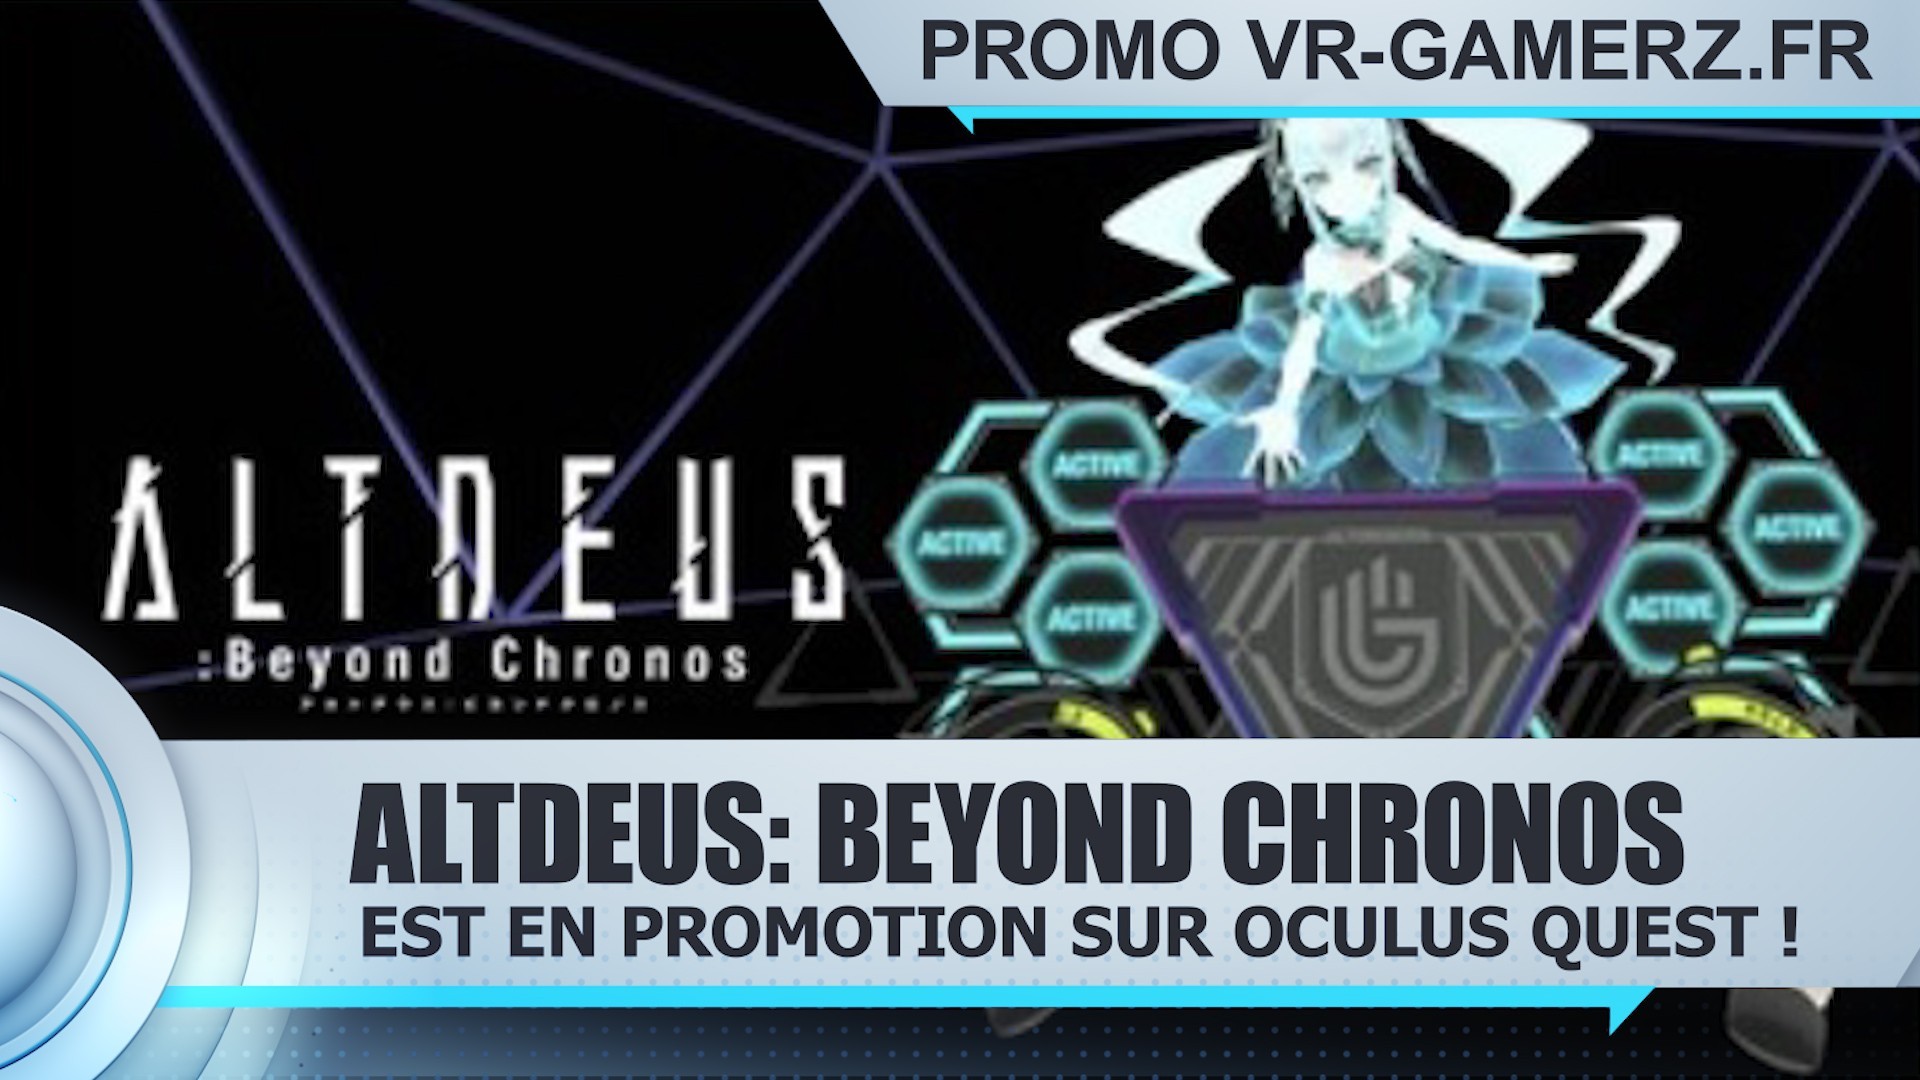 ALTDEUS: Beyond Chronos est en promotion sur Oculus quest !